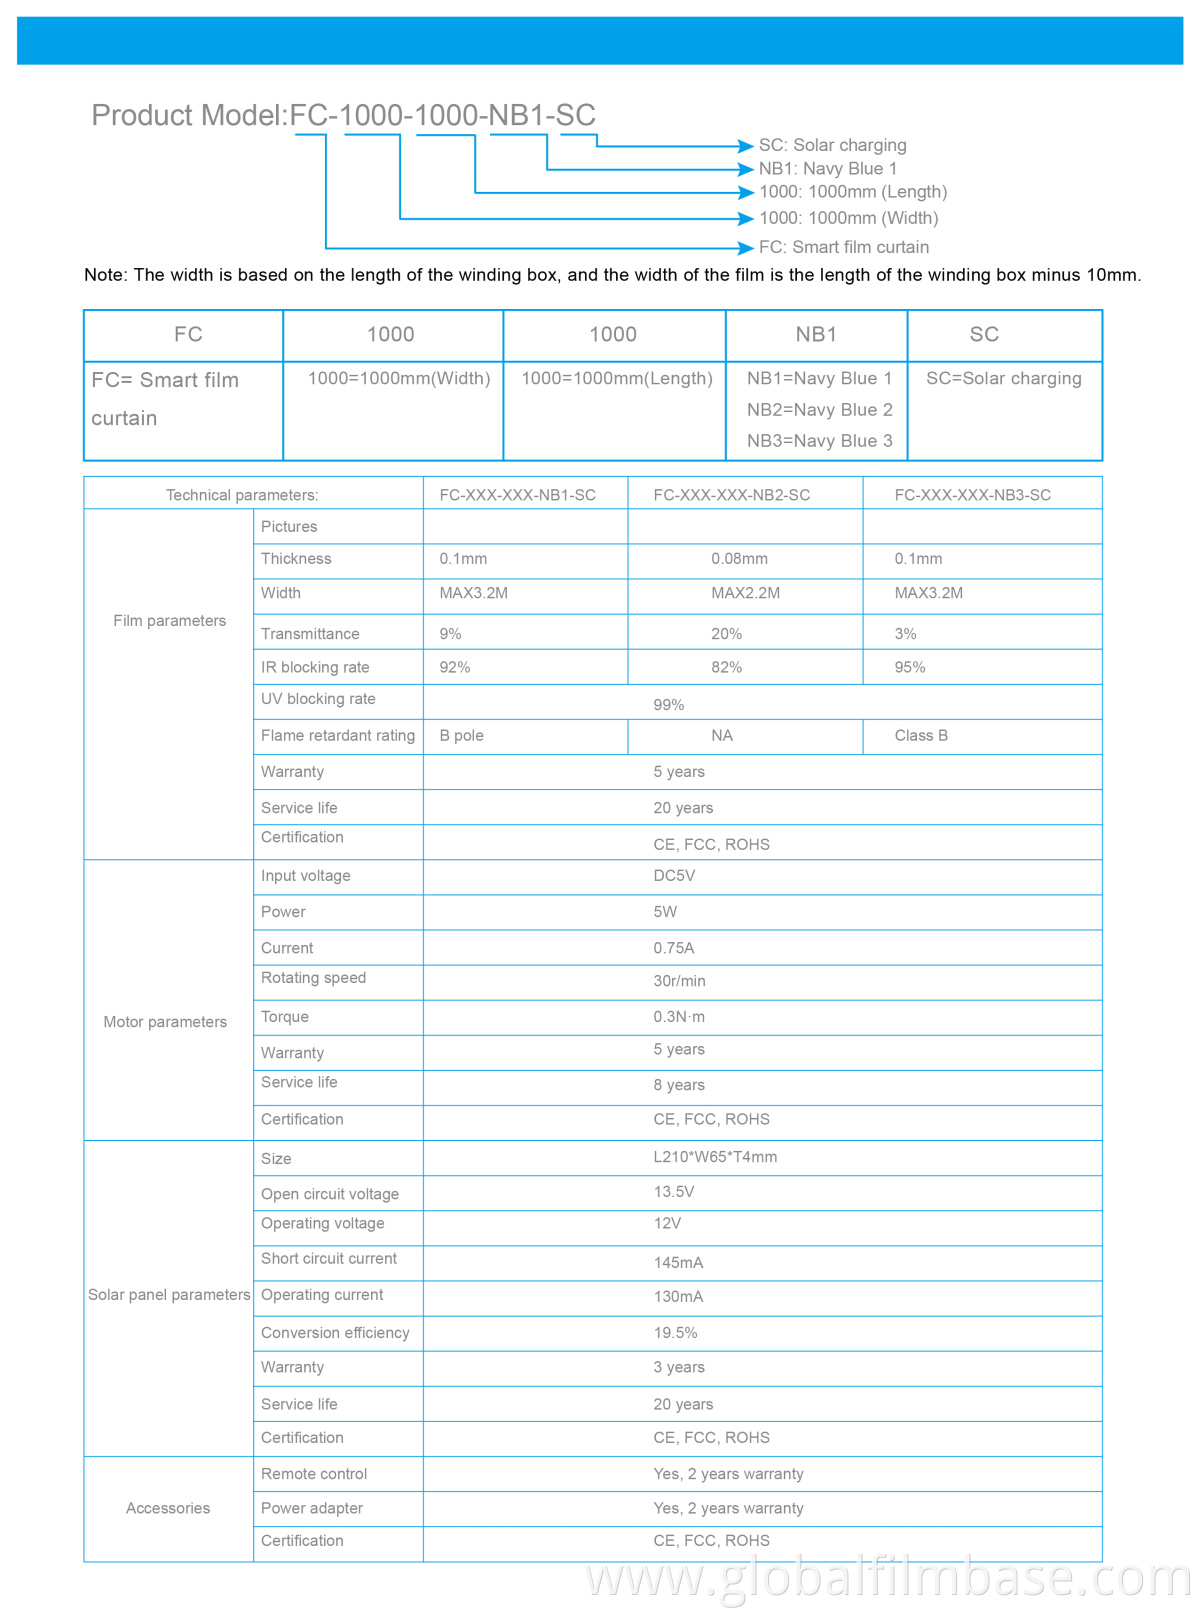 Filmbase Product data sheet